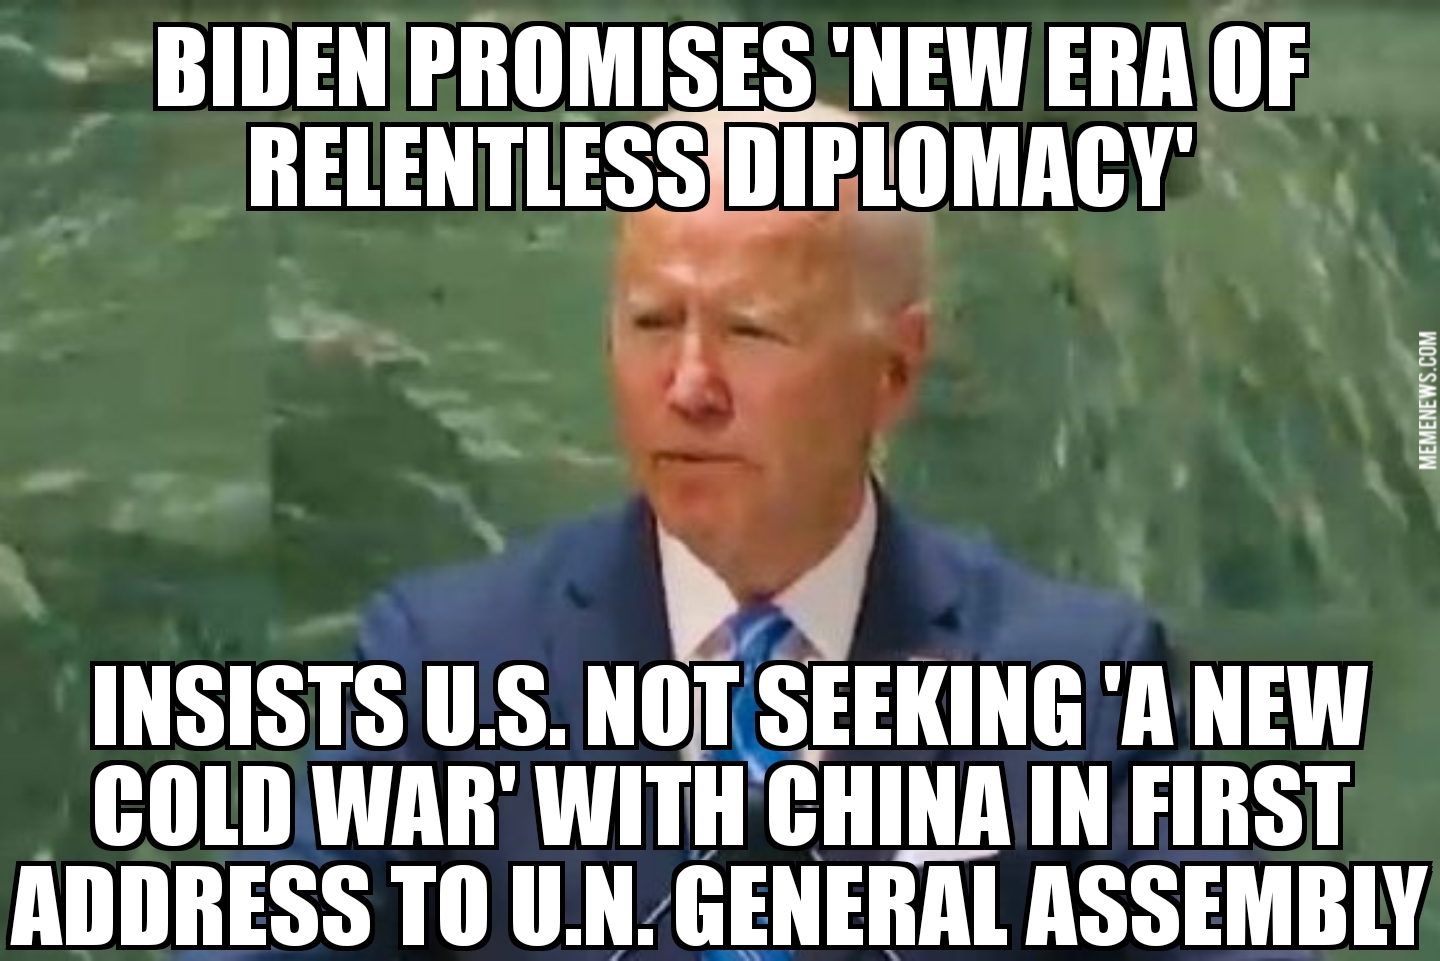 Biden first address to U.N.